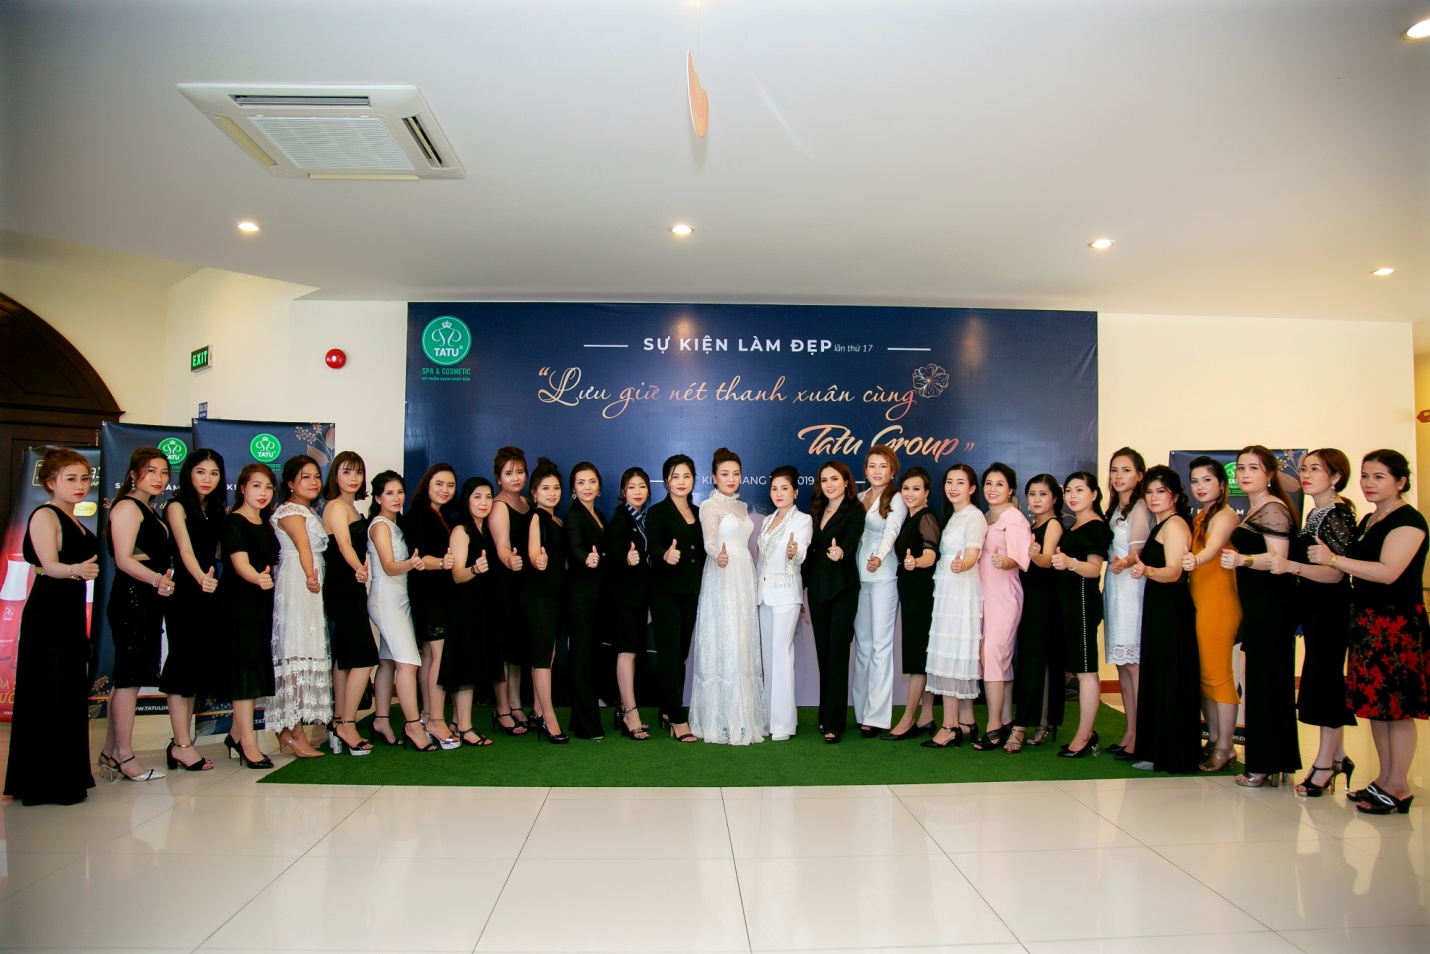 Lưu giữ nét thanh xuân – Sự kiện làm đẹp được mong chờ nhất của Tatu Group tại Kiên Giang